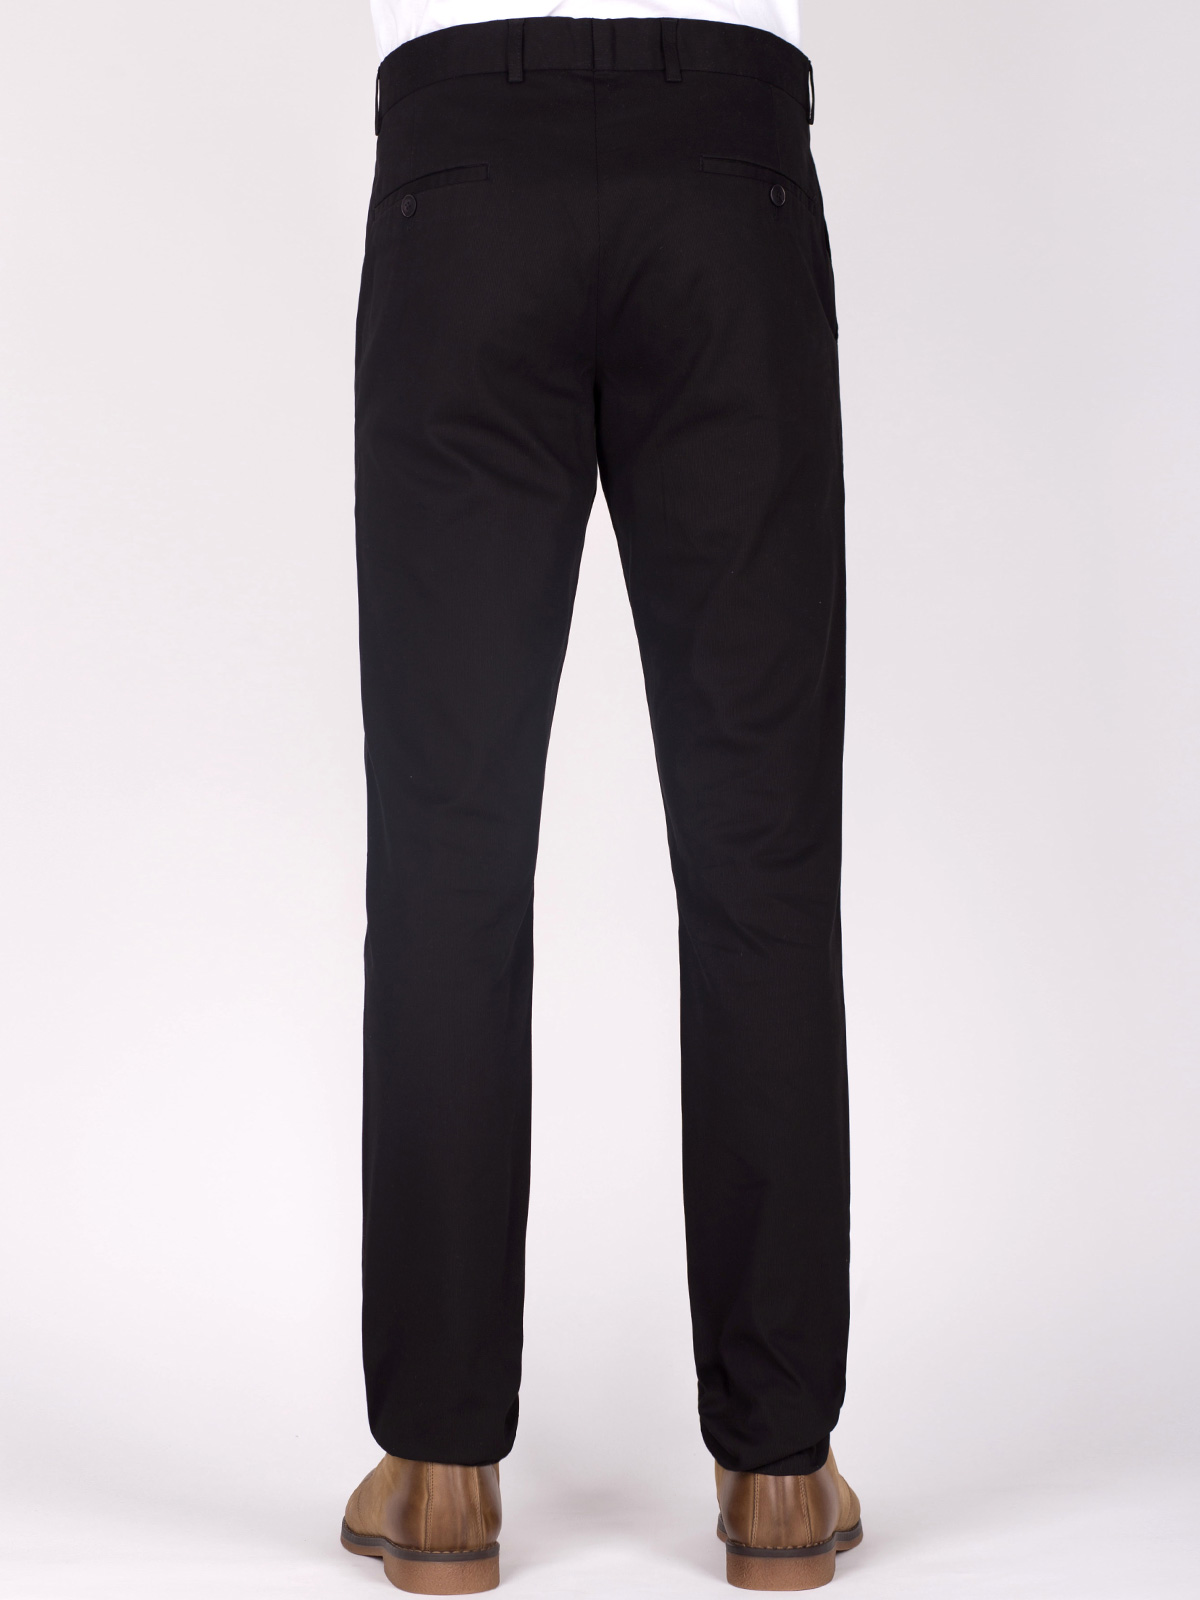 Черен втален панталон от памук - 60275 25.00 лв img2